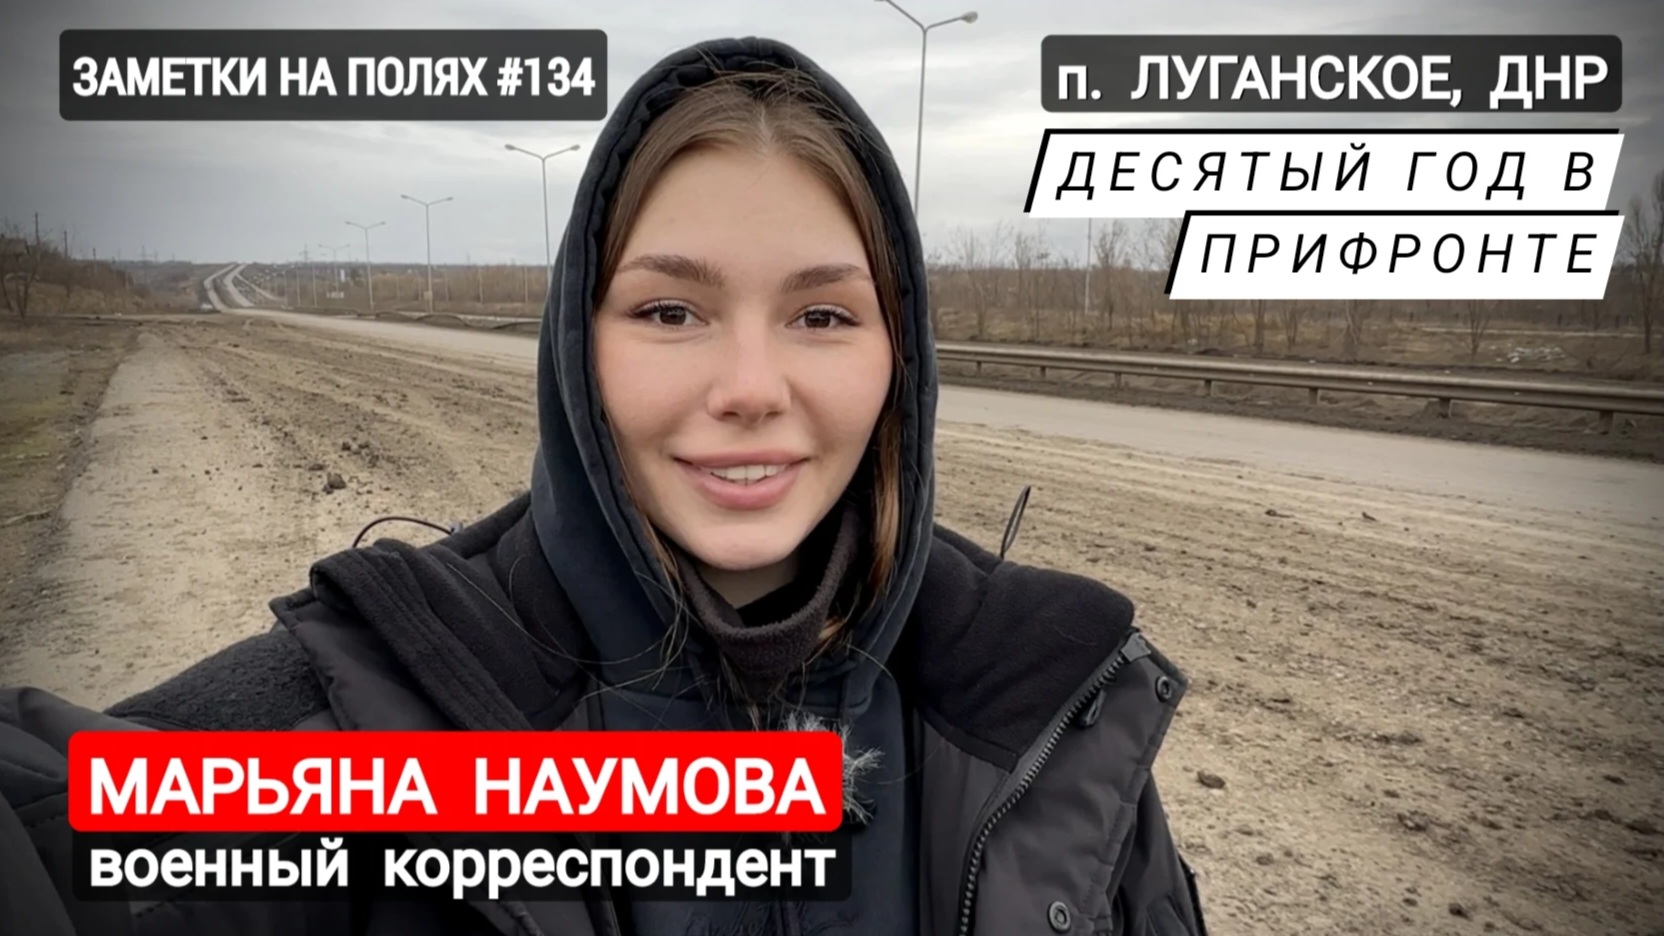 ЗАМЕТКИ НА ПОЛЯХ #134 : п. Луганское, ДНР, десятый год в прифронте : военкор Марьяна Наумова